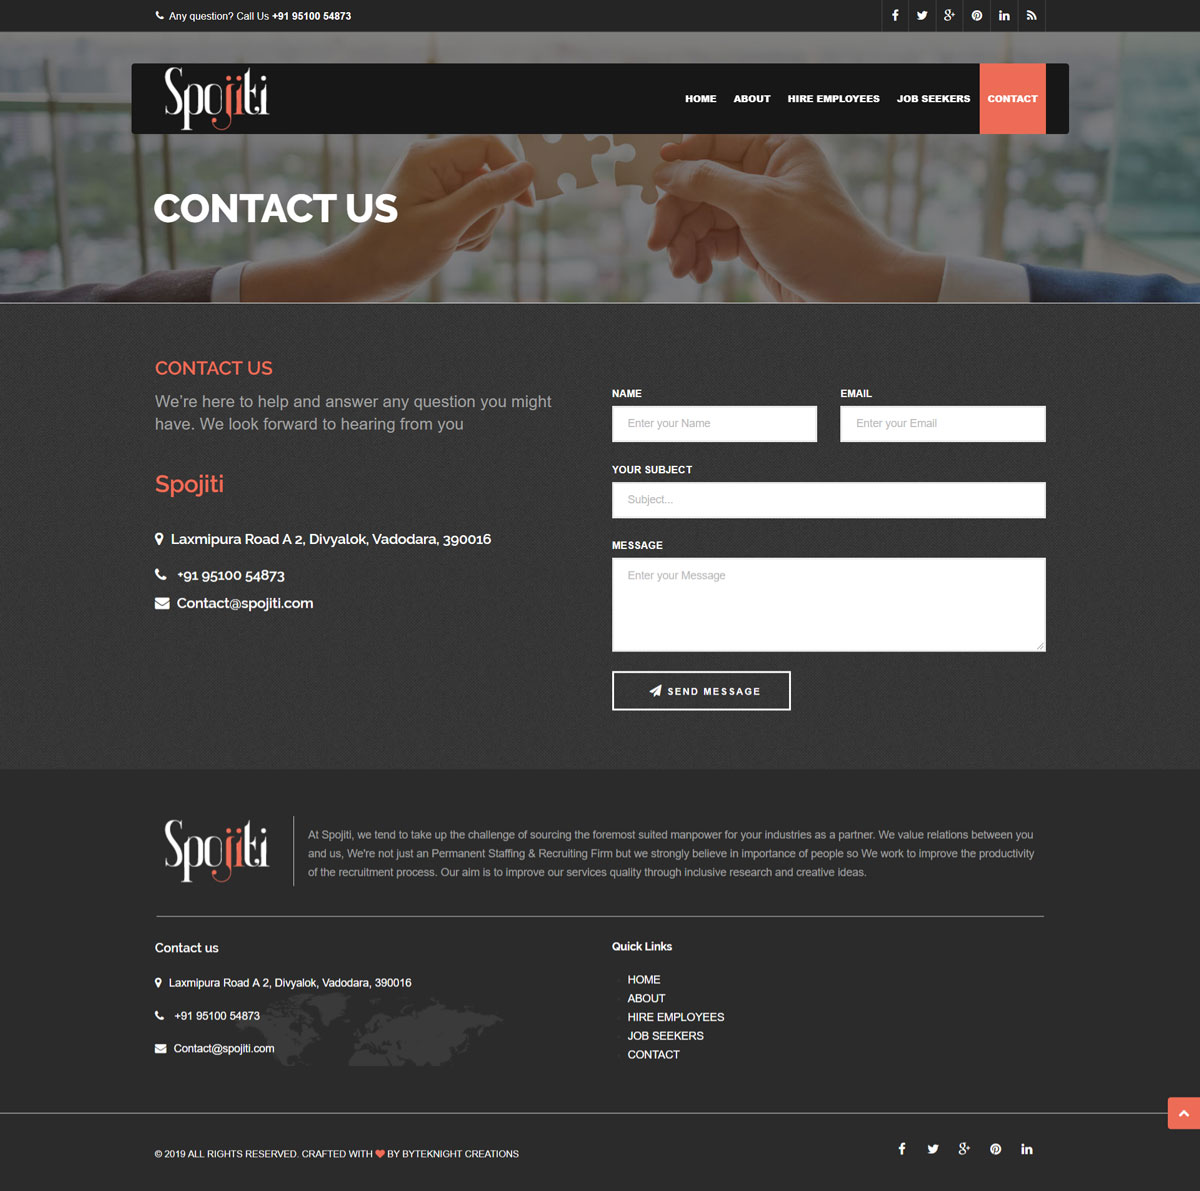 Spojiti – IT Recruitment Website Design And Development